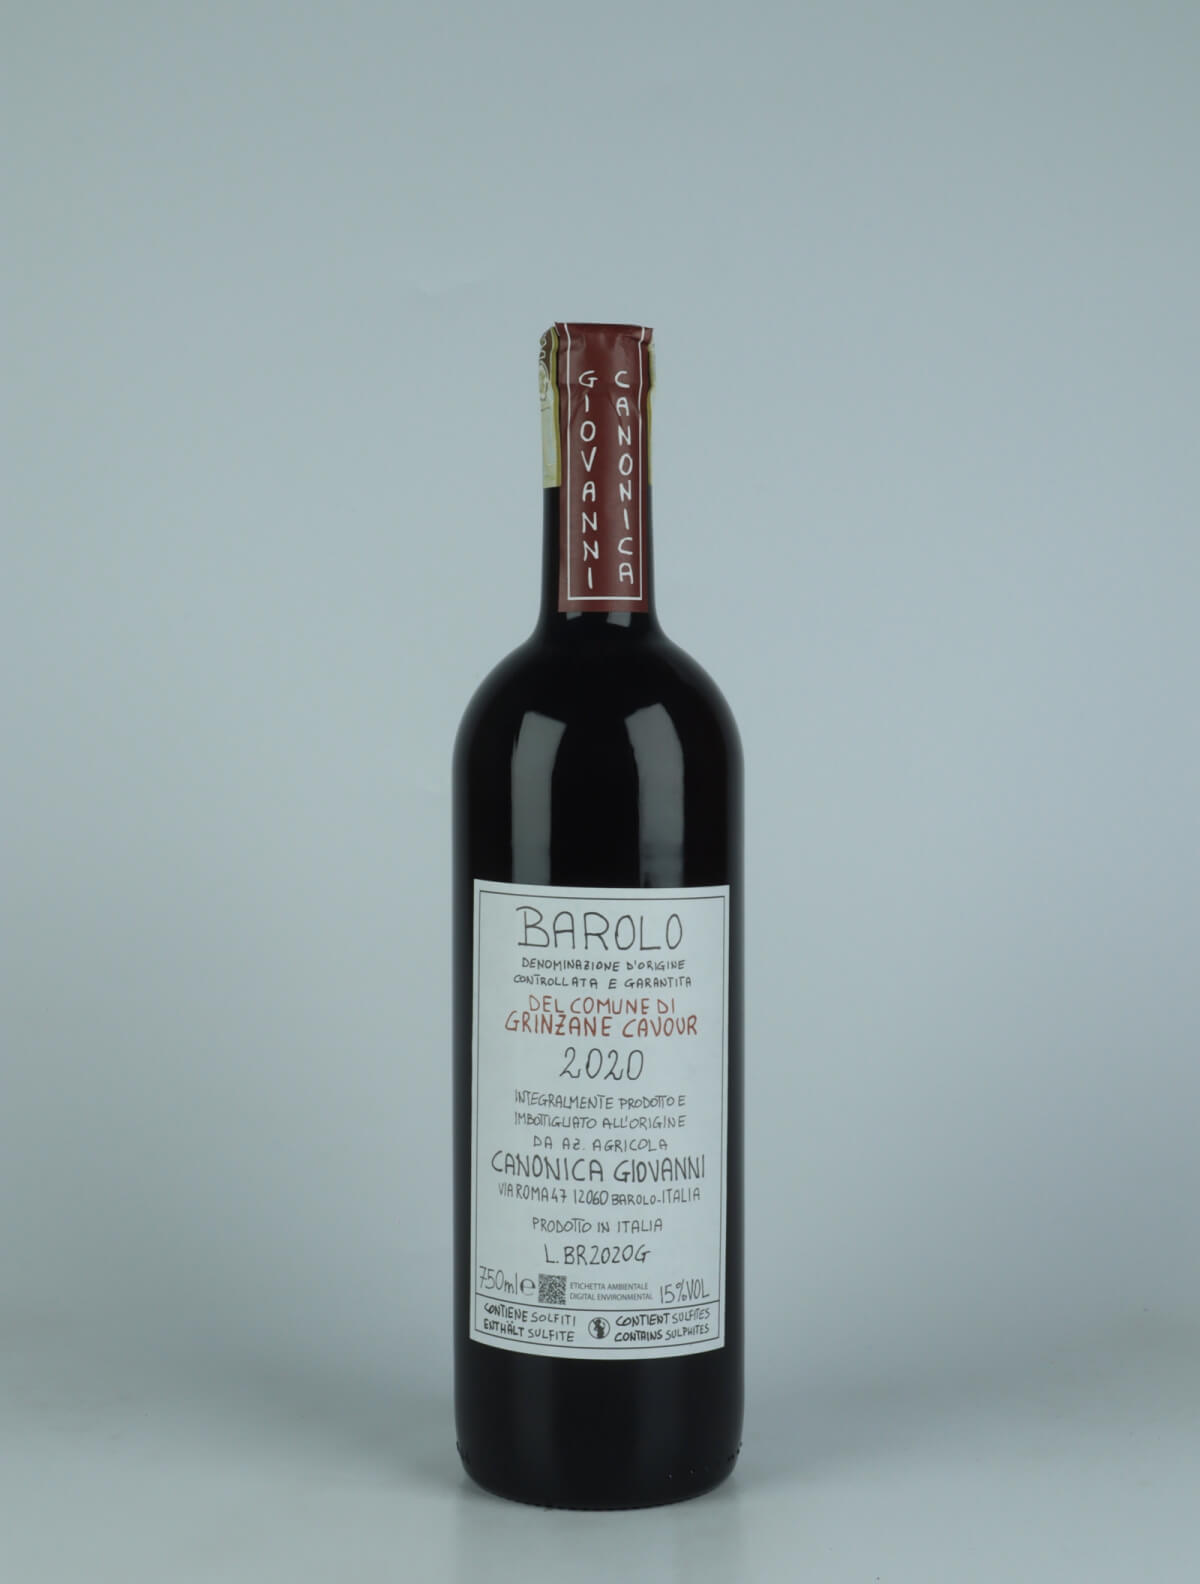 En flaske 2020 Barolo - Del Comune di Grinzane Cavour Rødvin fra Giovanni Canonica, Piemonte i Italien